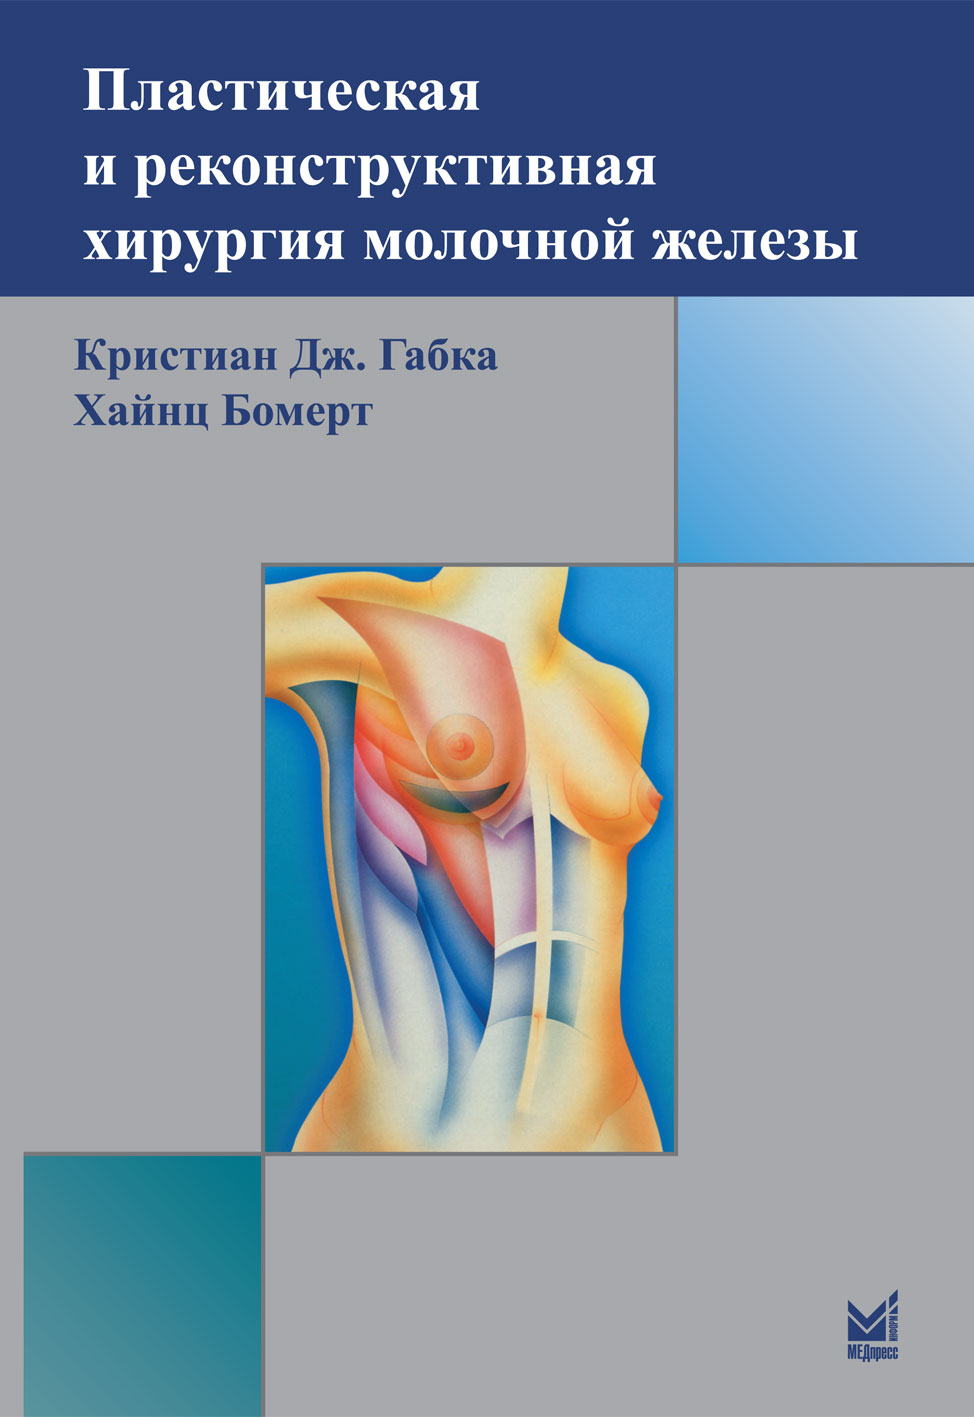 Бомерт Х., Габка К.Дж. - Пластическая и реконструктивная хирургия молочной железы 